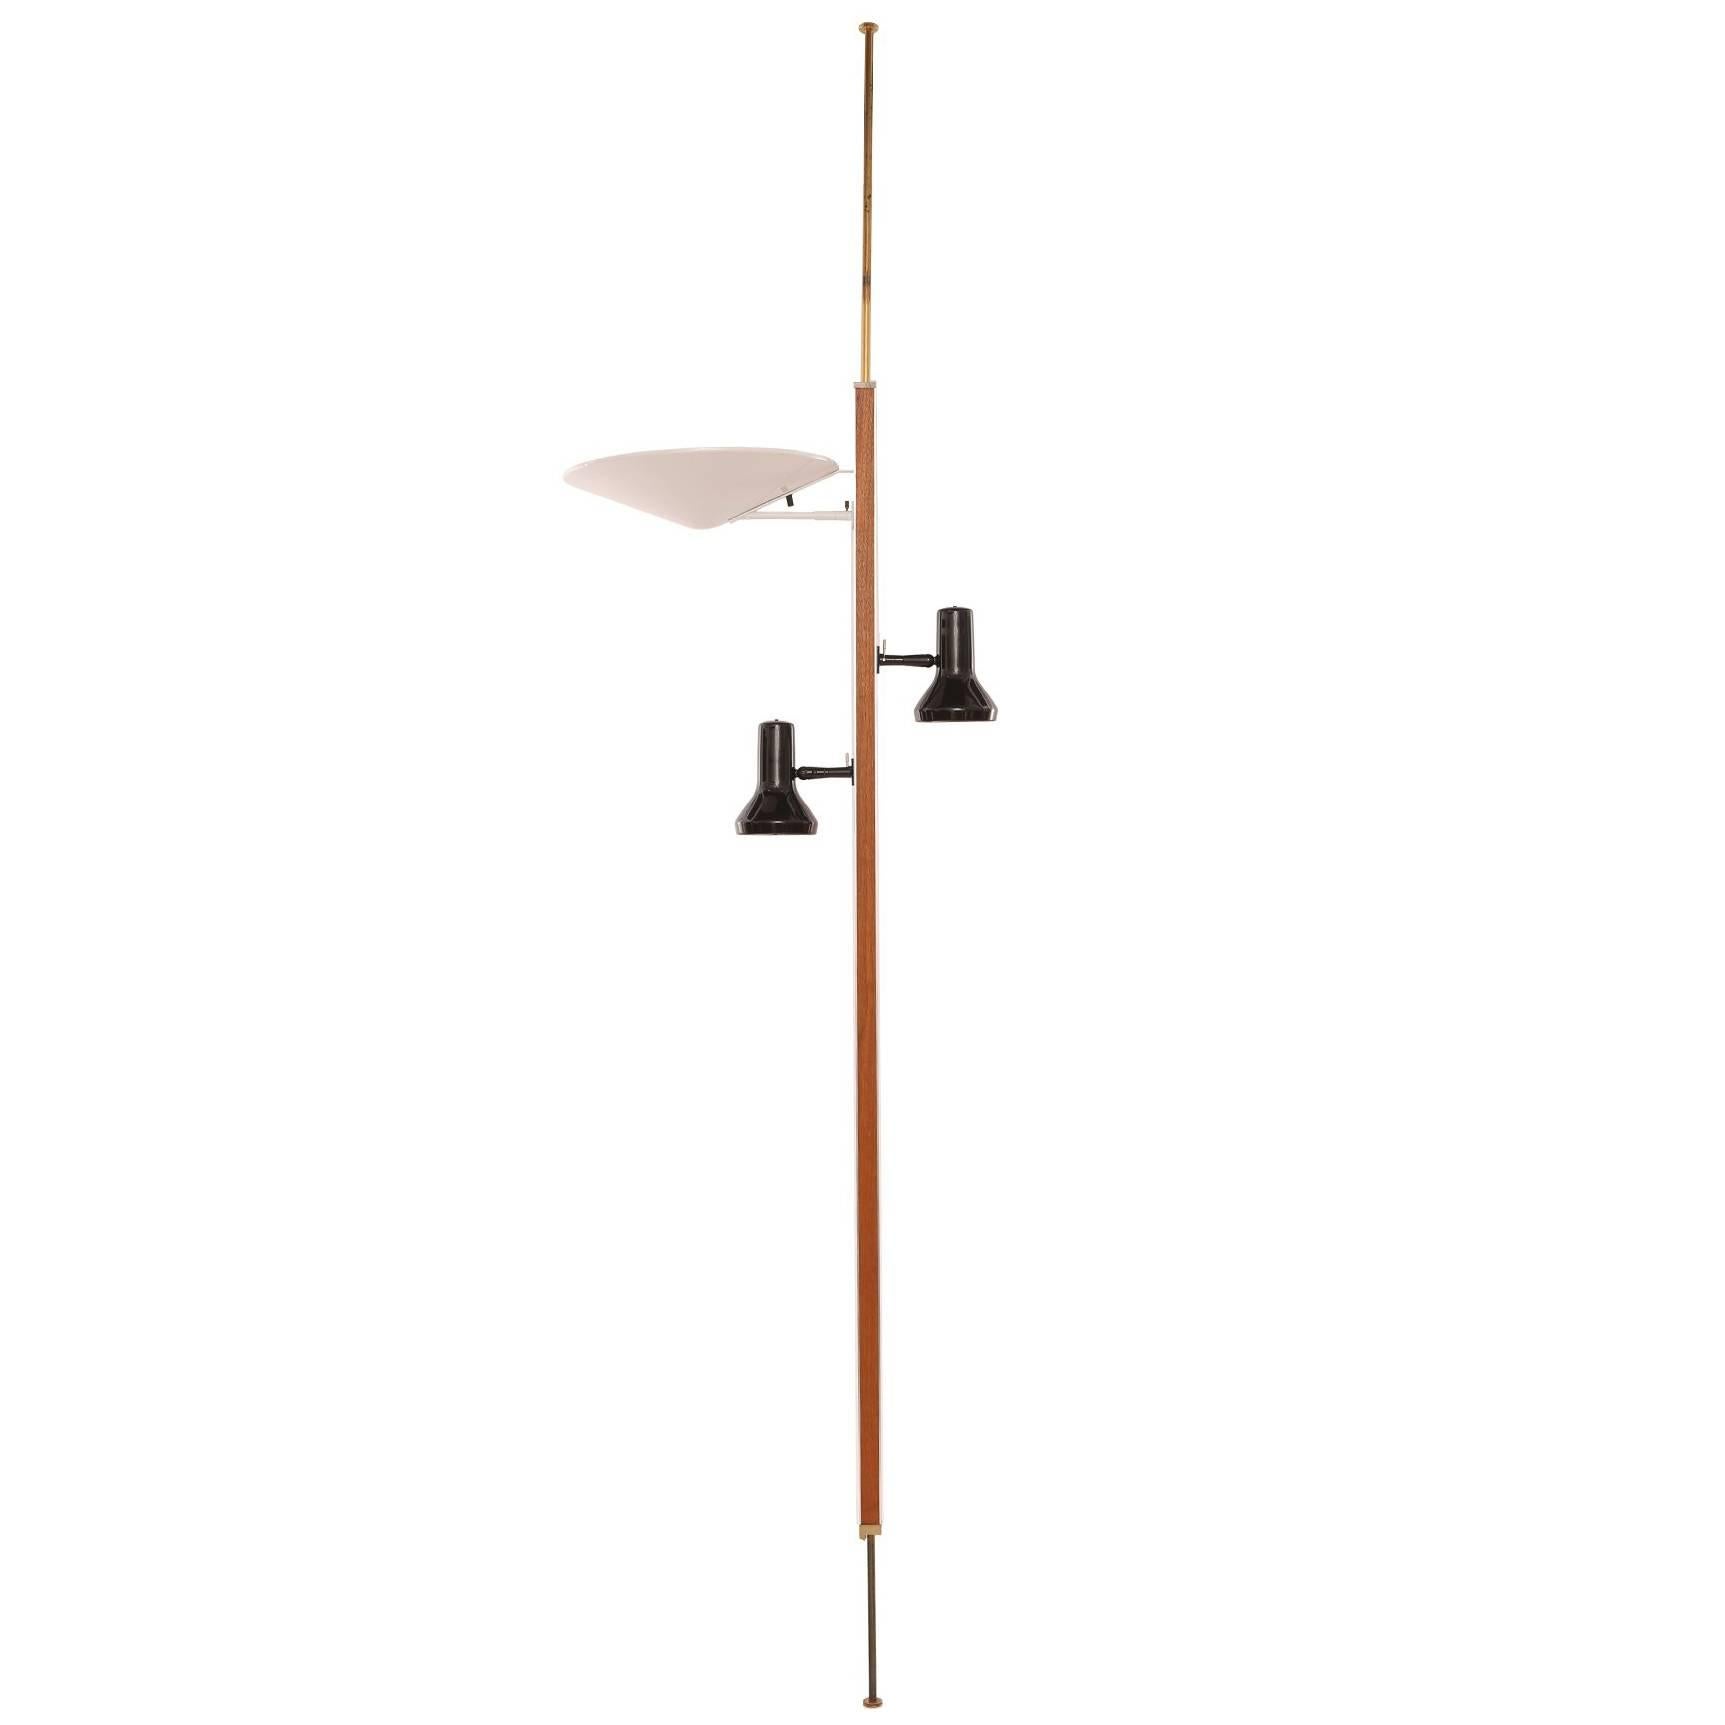 Gerald Thurston Lightolier Pole Lamp